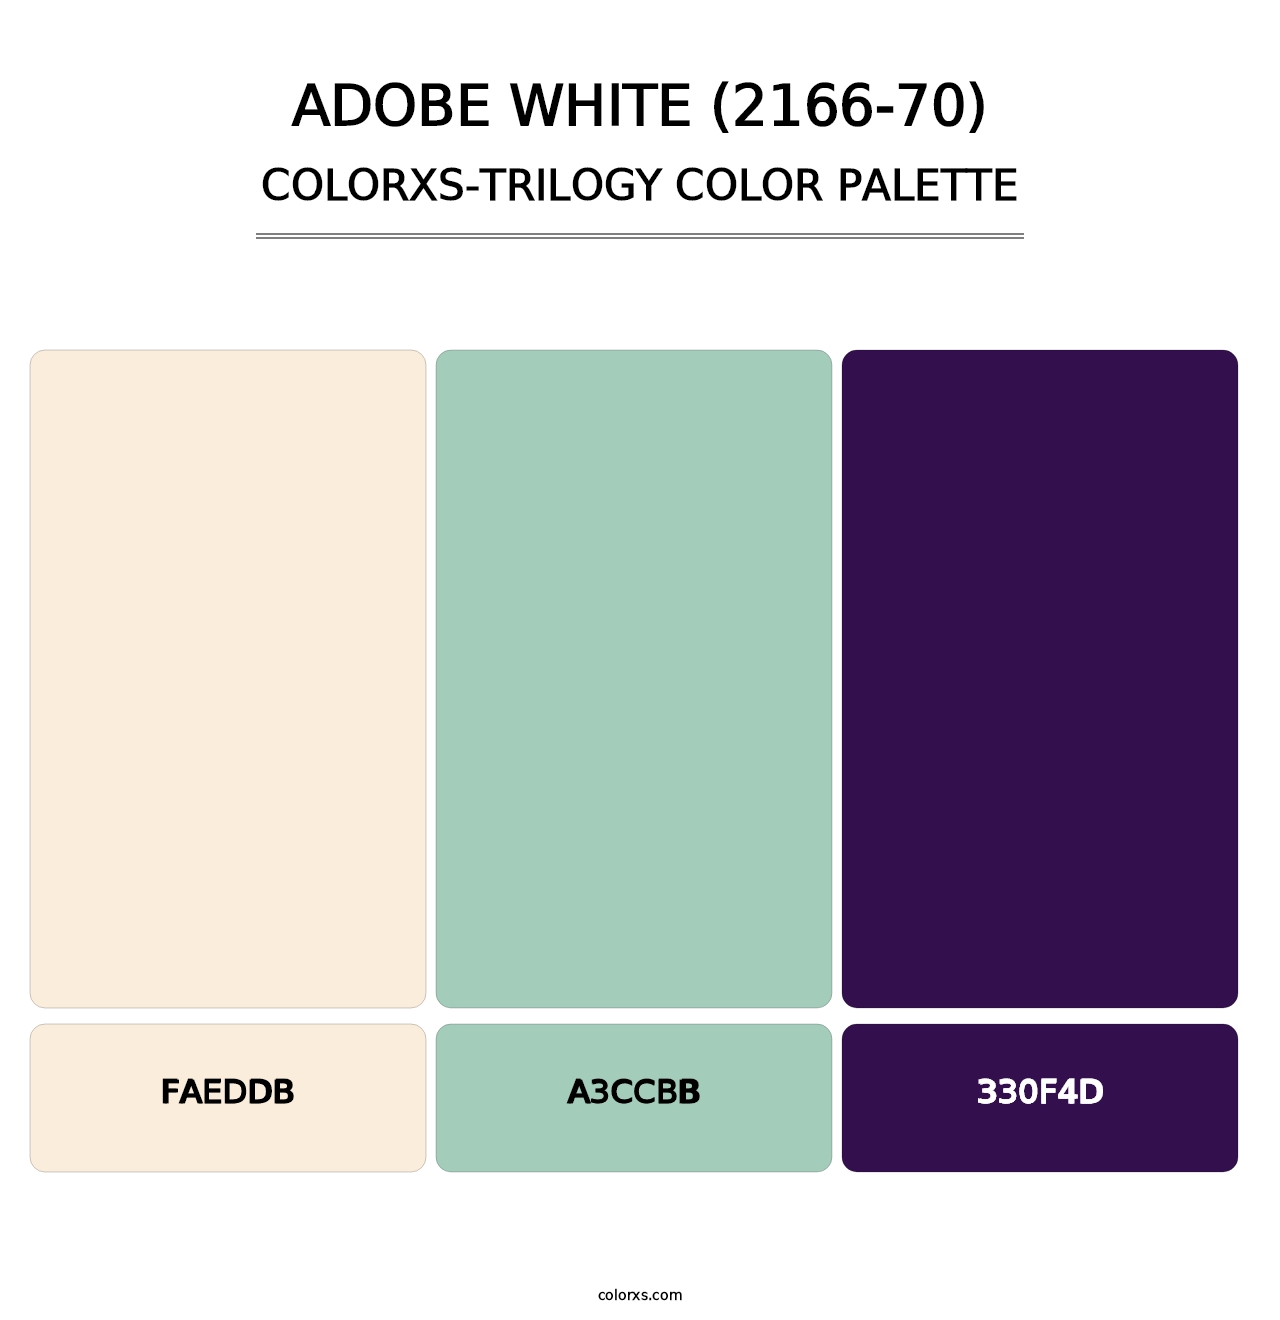 Adobe White (2166-70) - Colorxs Trilogy Palette